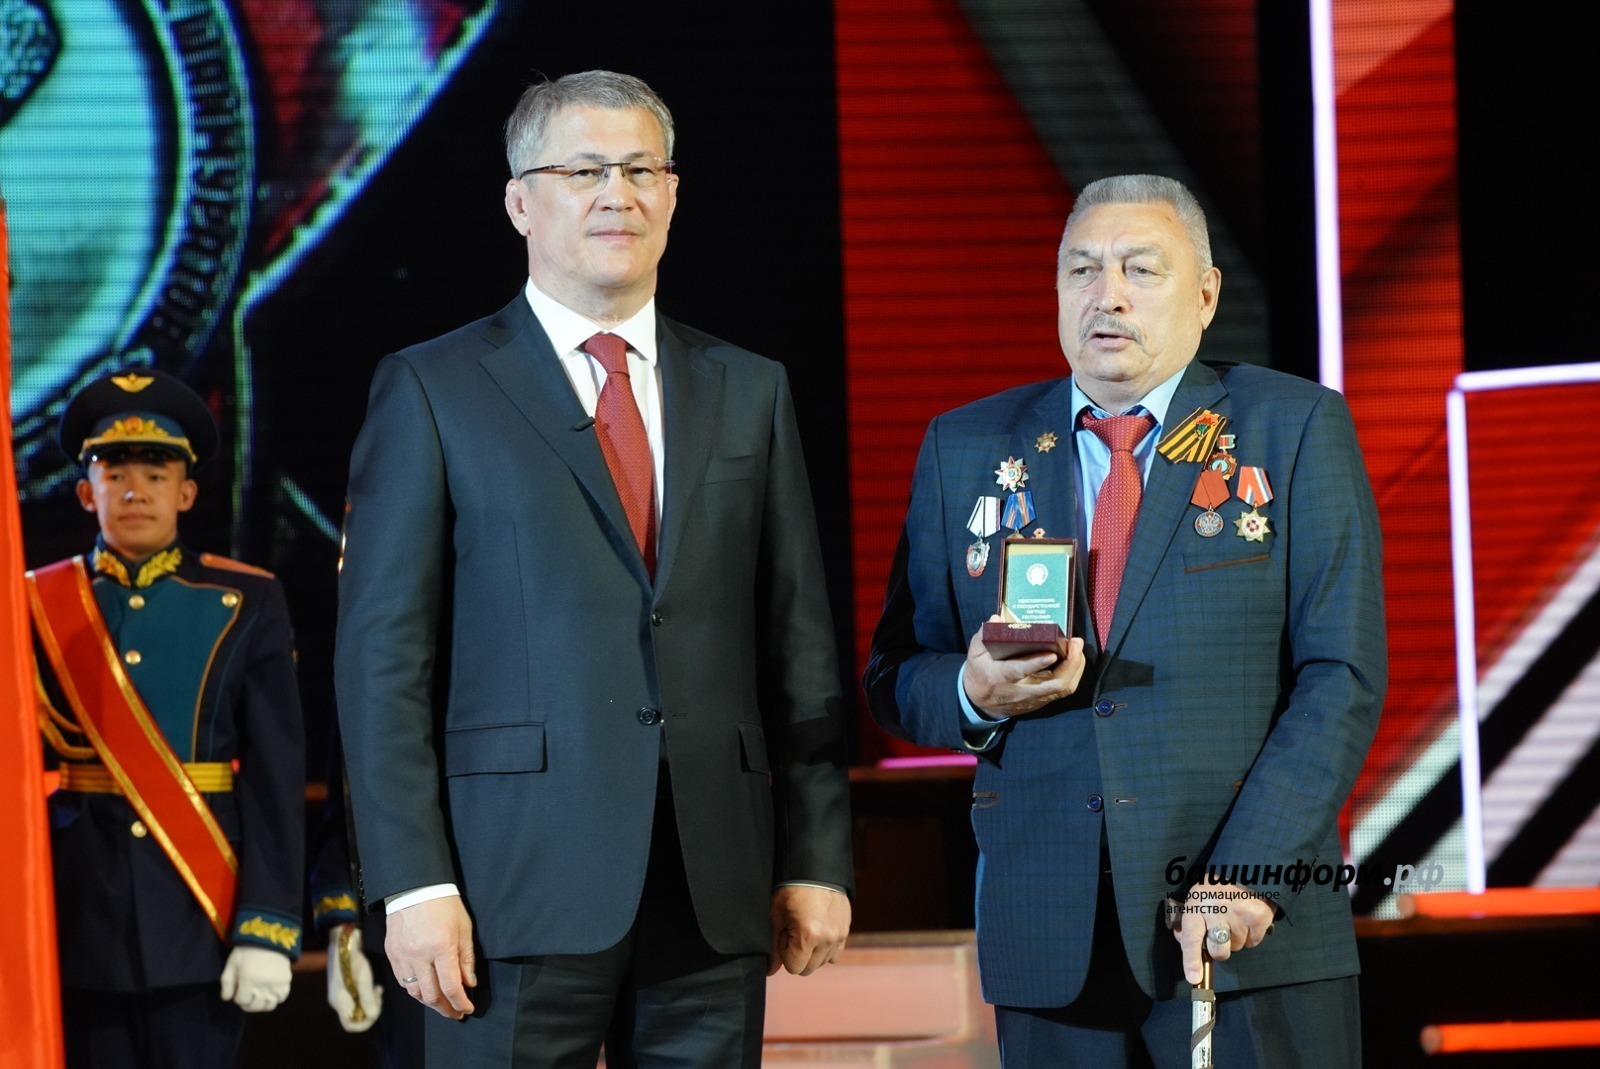 Кавалер ордена Шаймуратова Петр Мурзадеров: «Мы продолжатели дела наших отцов»